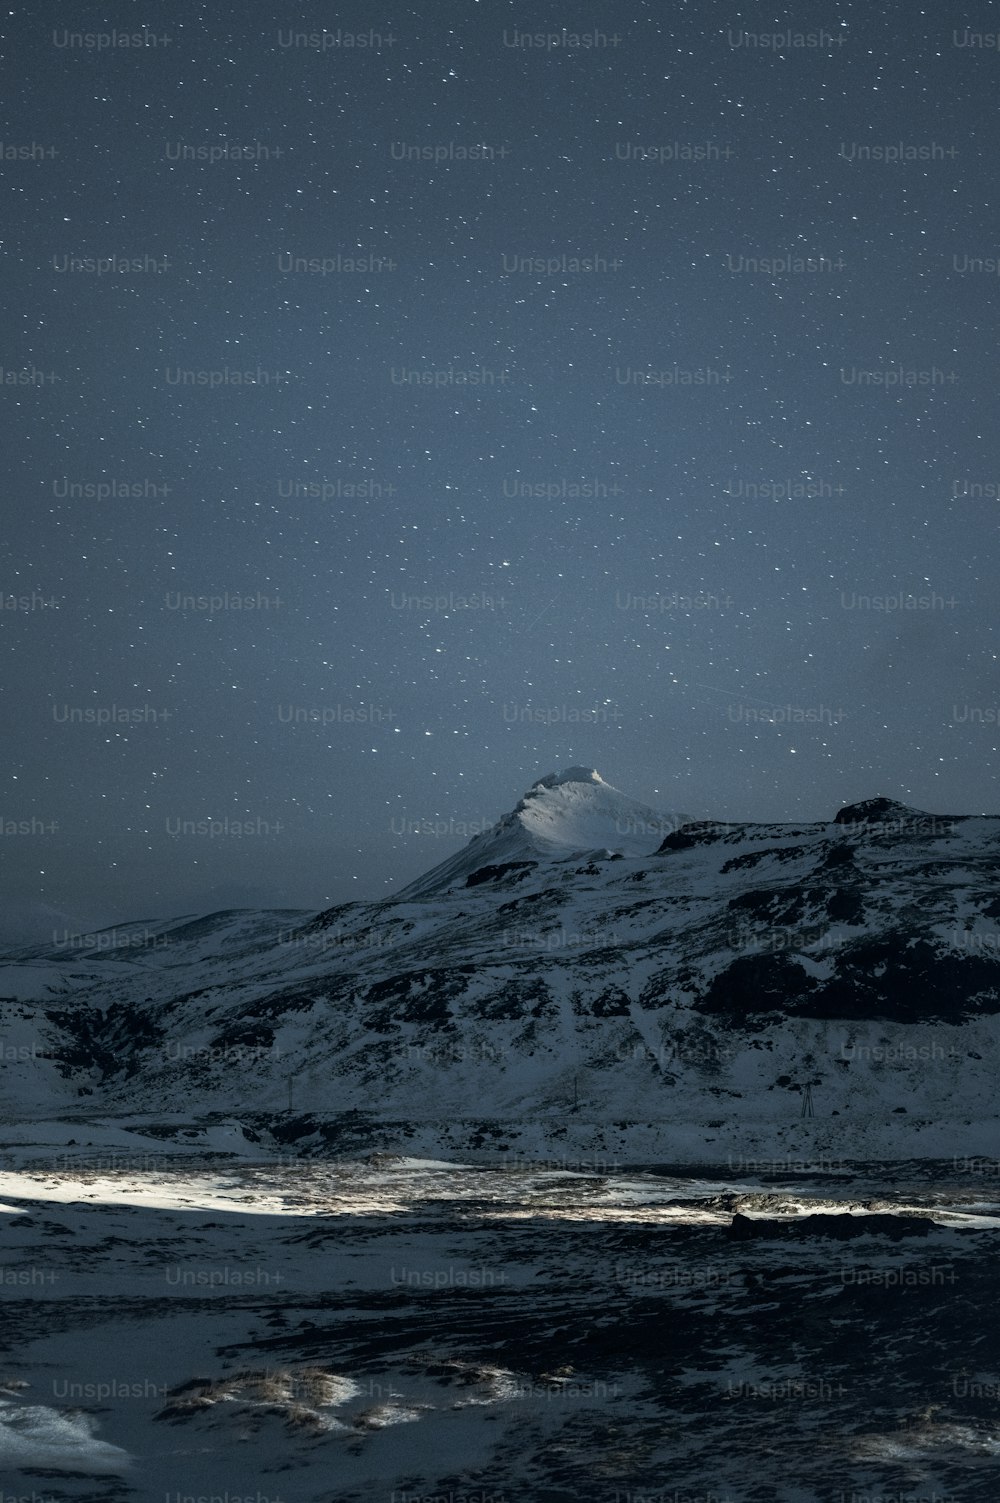 Une montagne enneigée sous un ciel nocturne